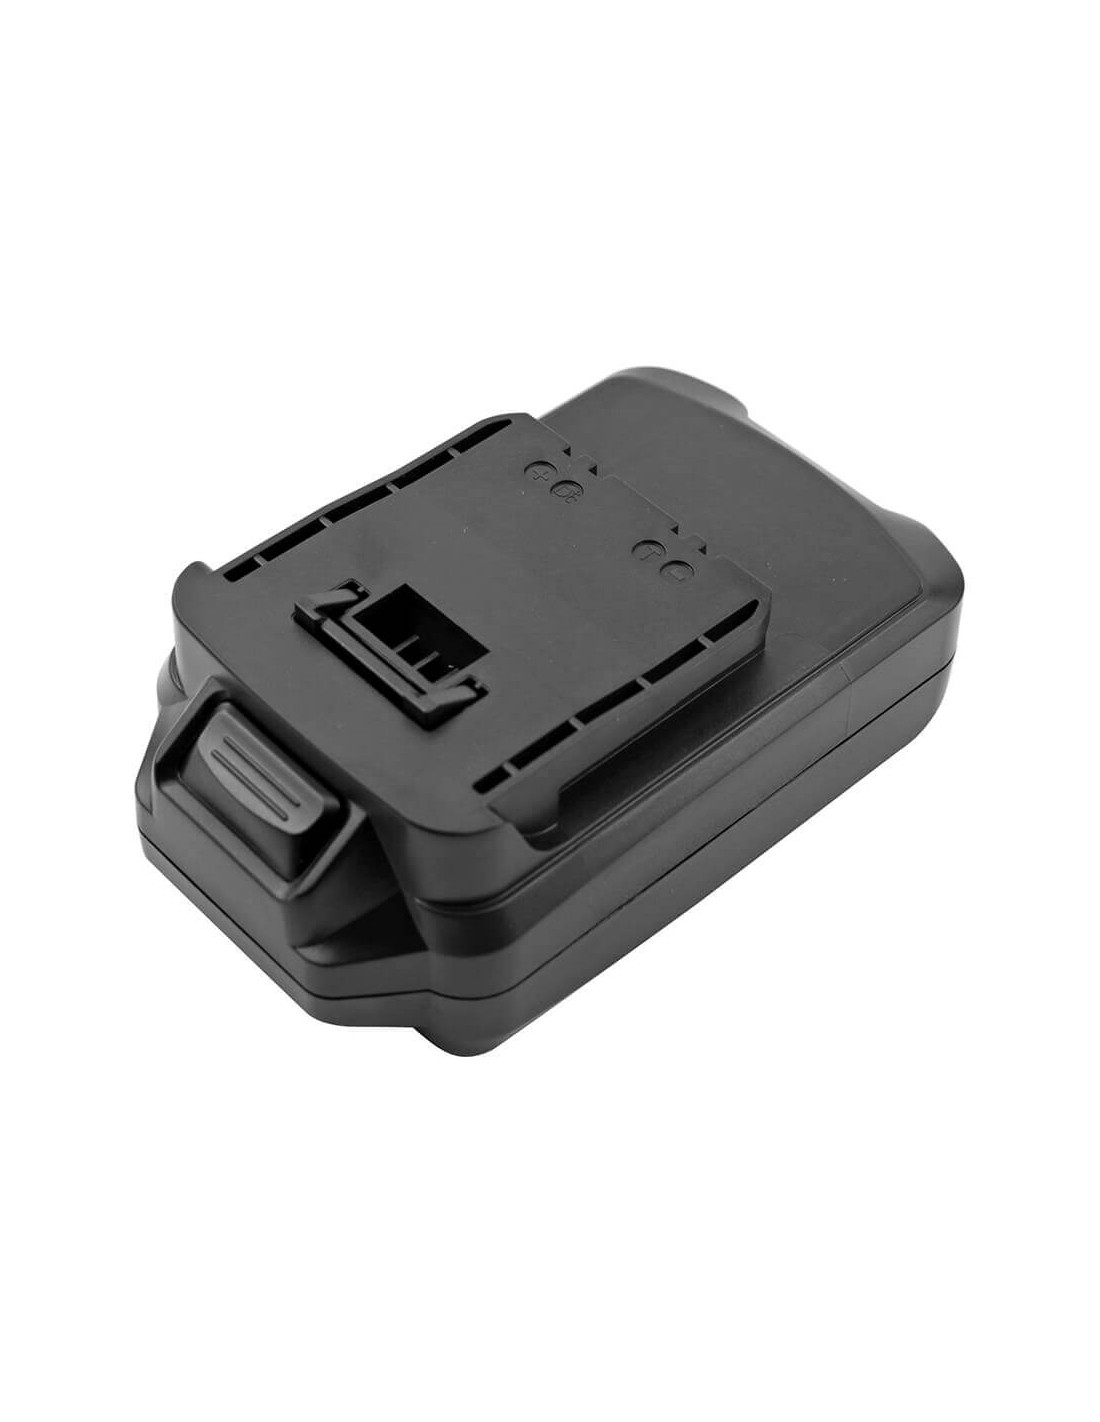 Battery for Meister Craft, 5450880, Mas144, Mas144vl 14.4V, 1500mAh - 21.60Wh